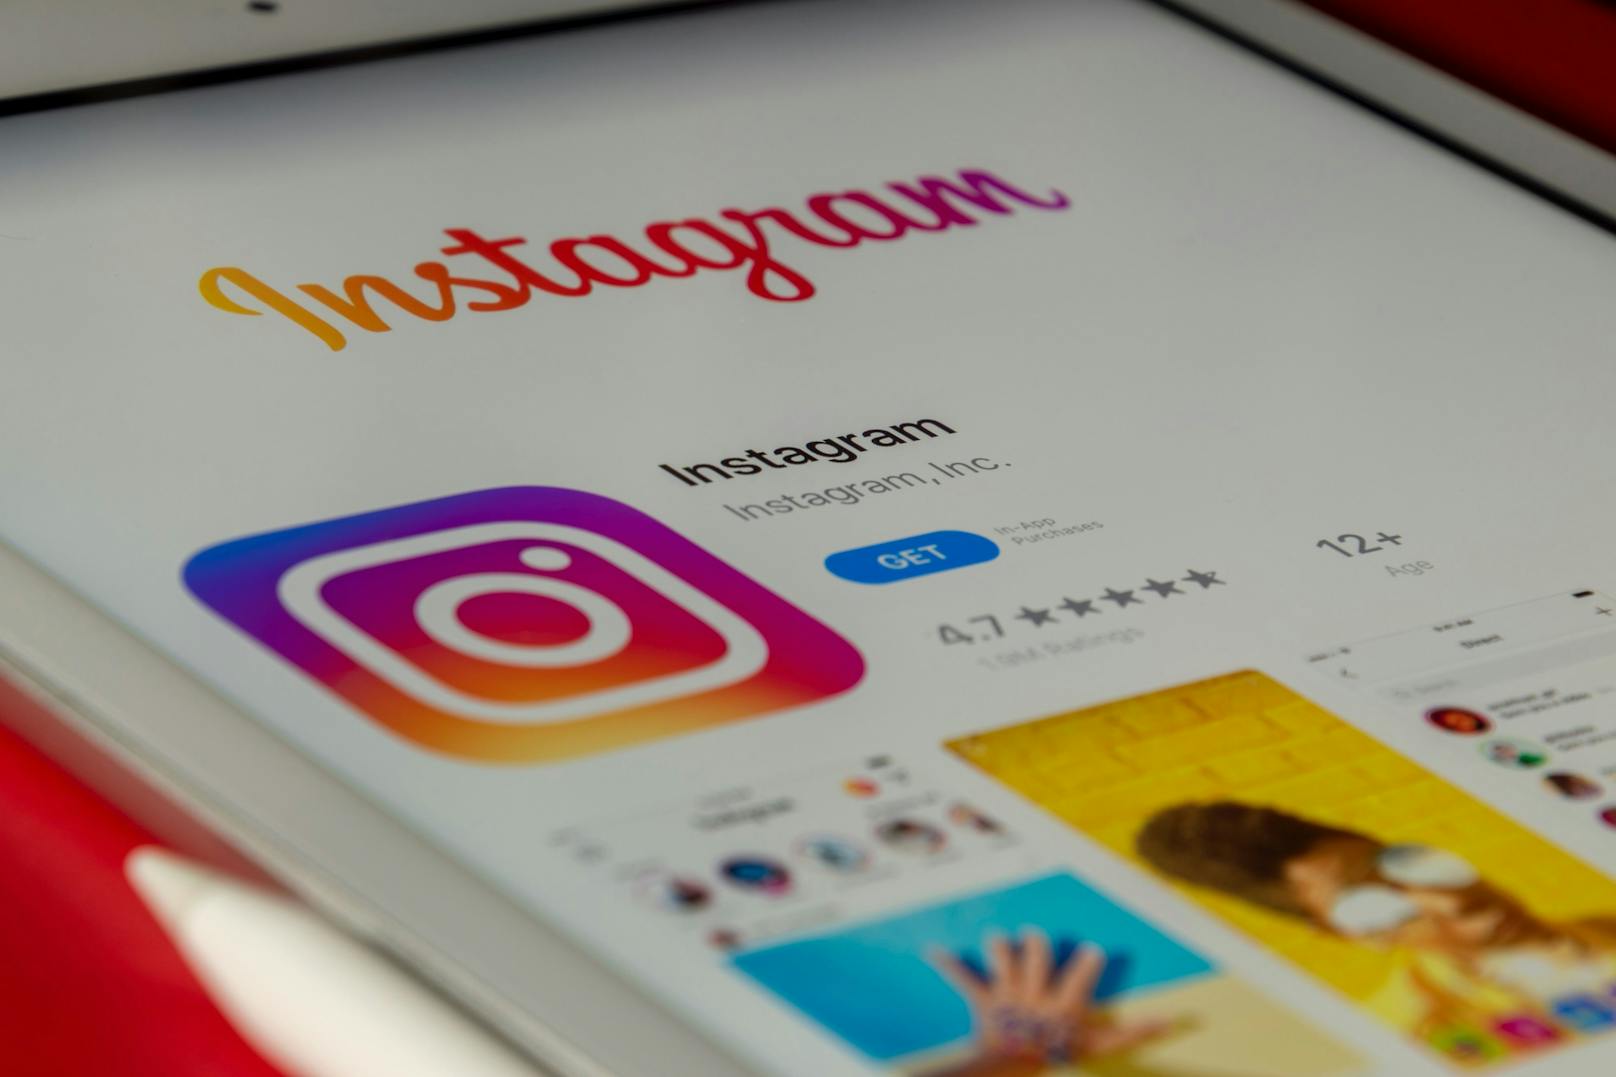 Instagram-Nutzer verunsichert – App trackt Standort